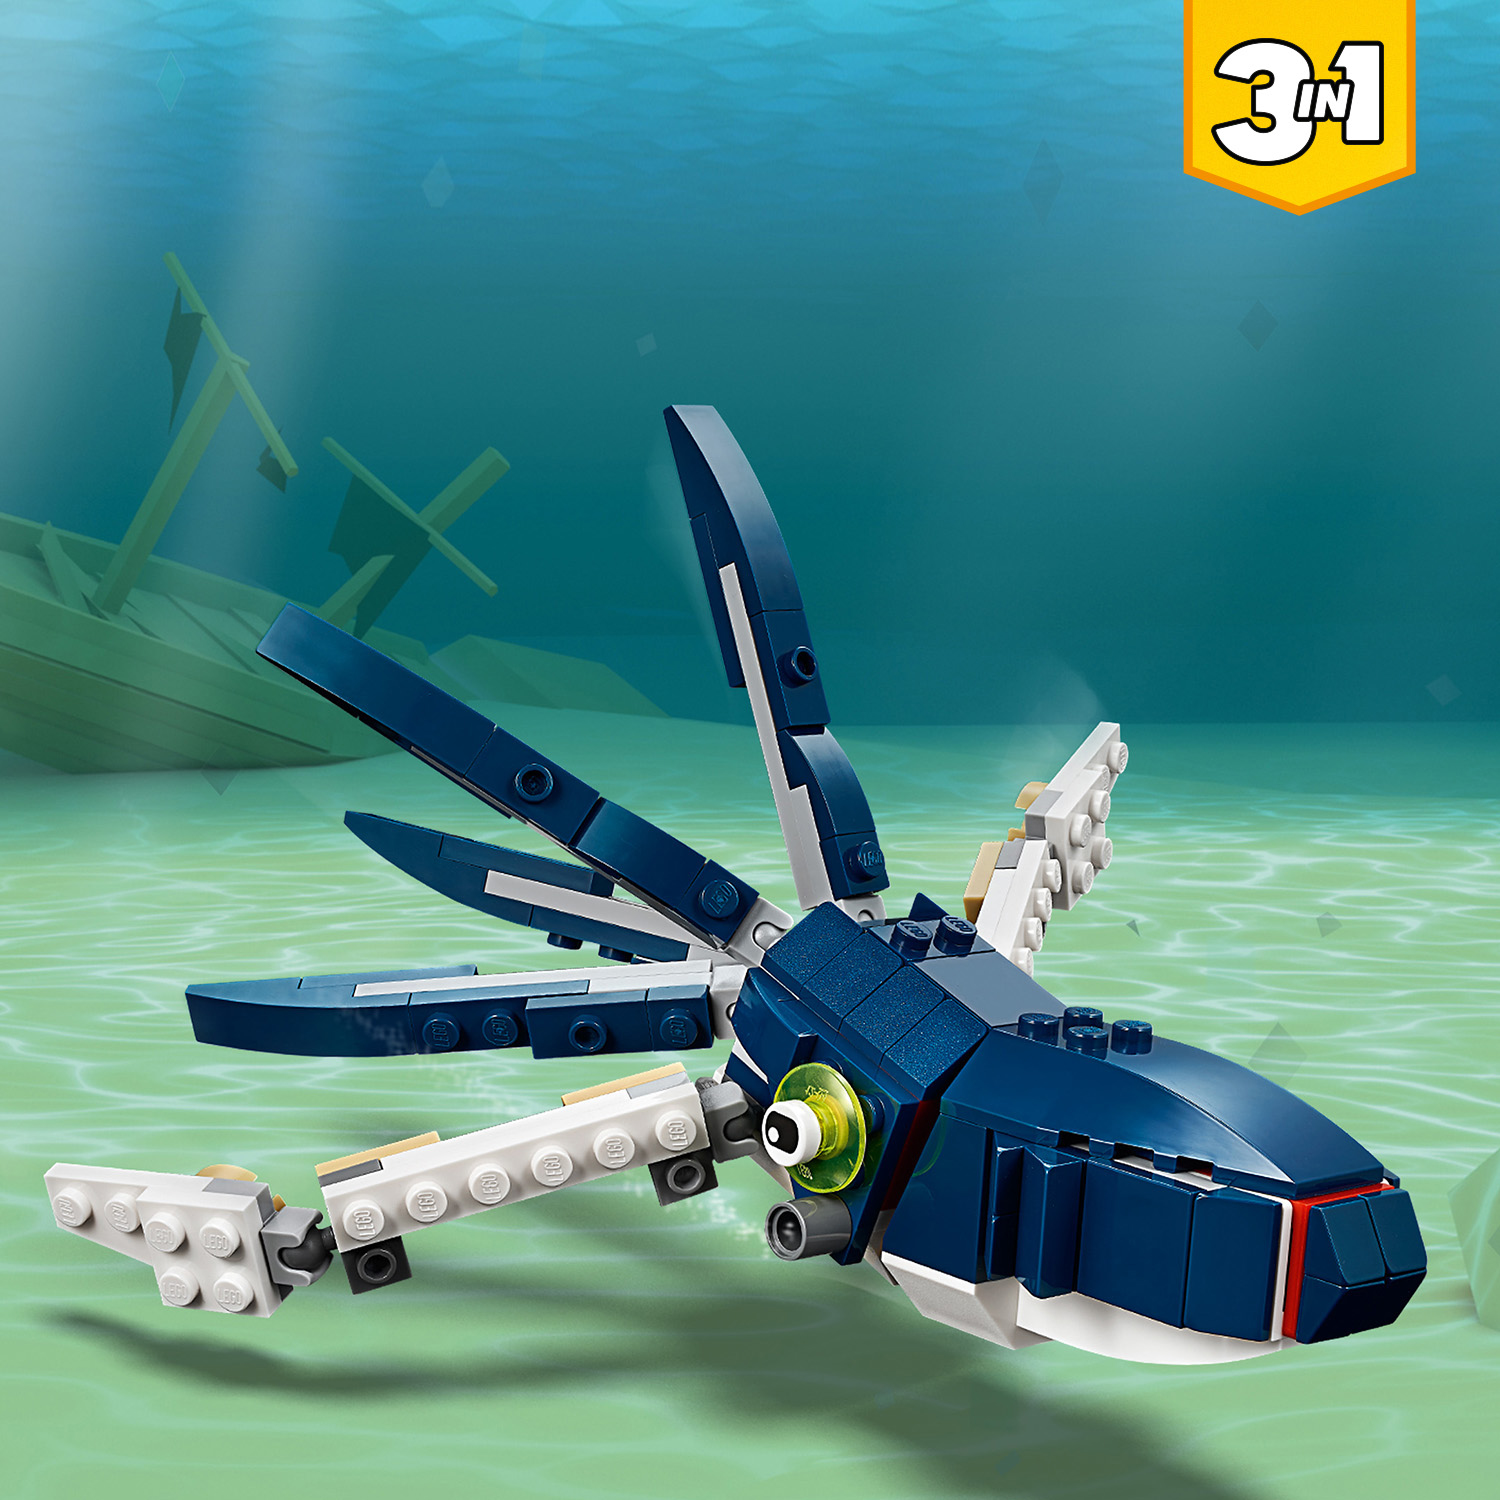 LEGO Creator Bewohner der Tiefsee